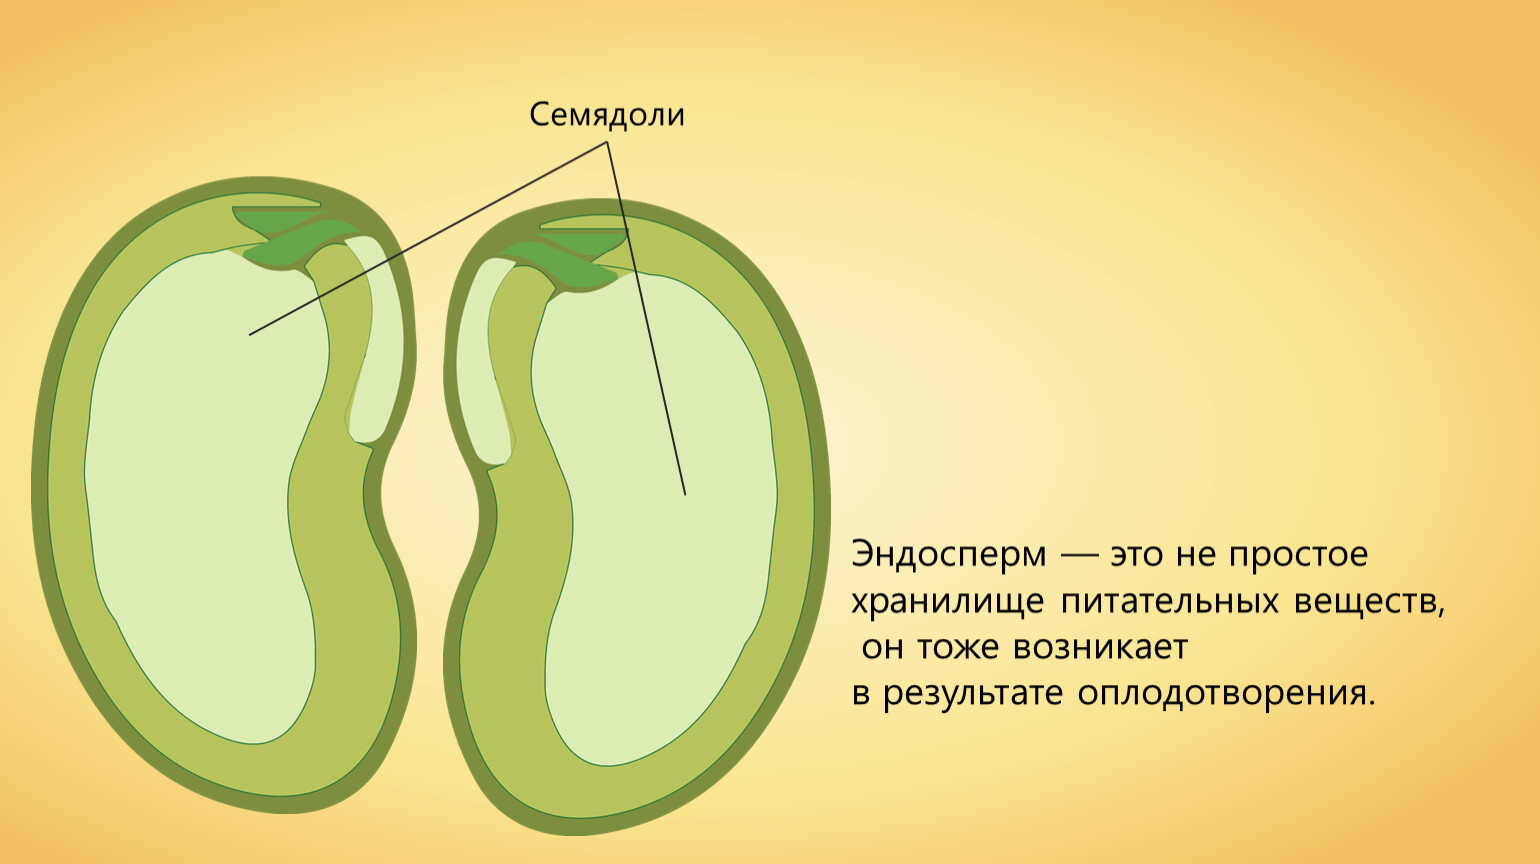 Семядоля гороха. Эндосперм у двудольных растений. Семядоли и эндосперм двудольных семян. Семядоли у двудольных растений. Строение семени зародыш эндосперм семядоля.